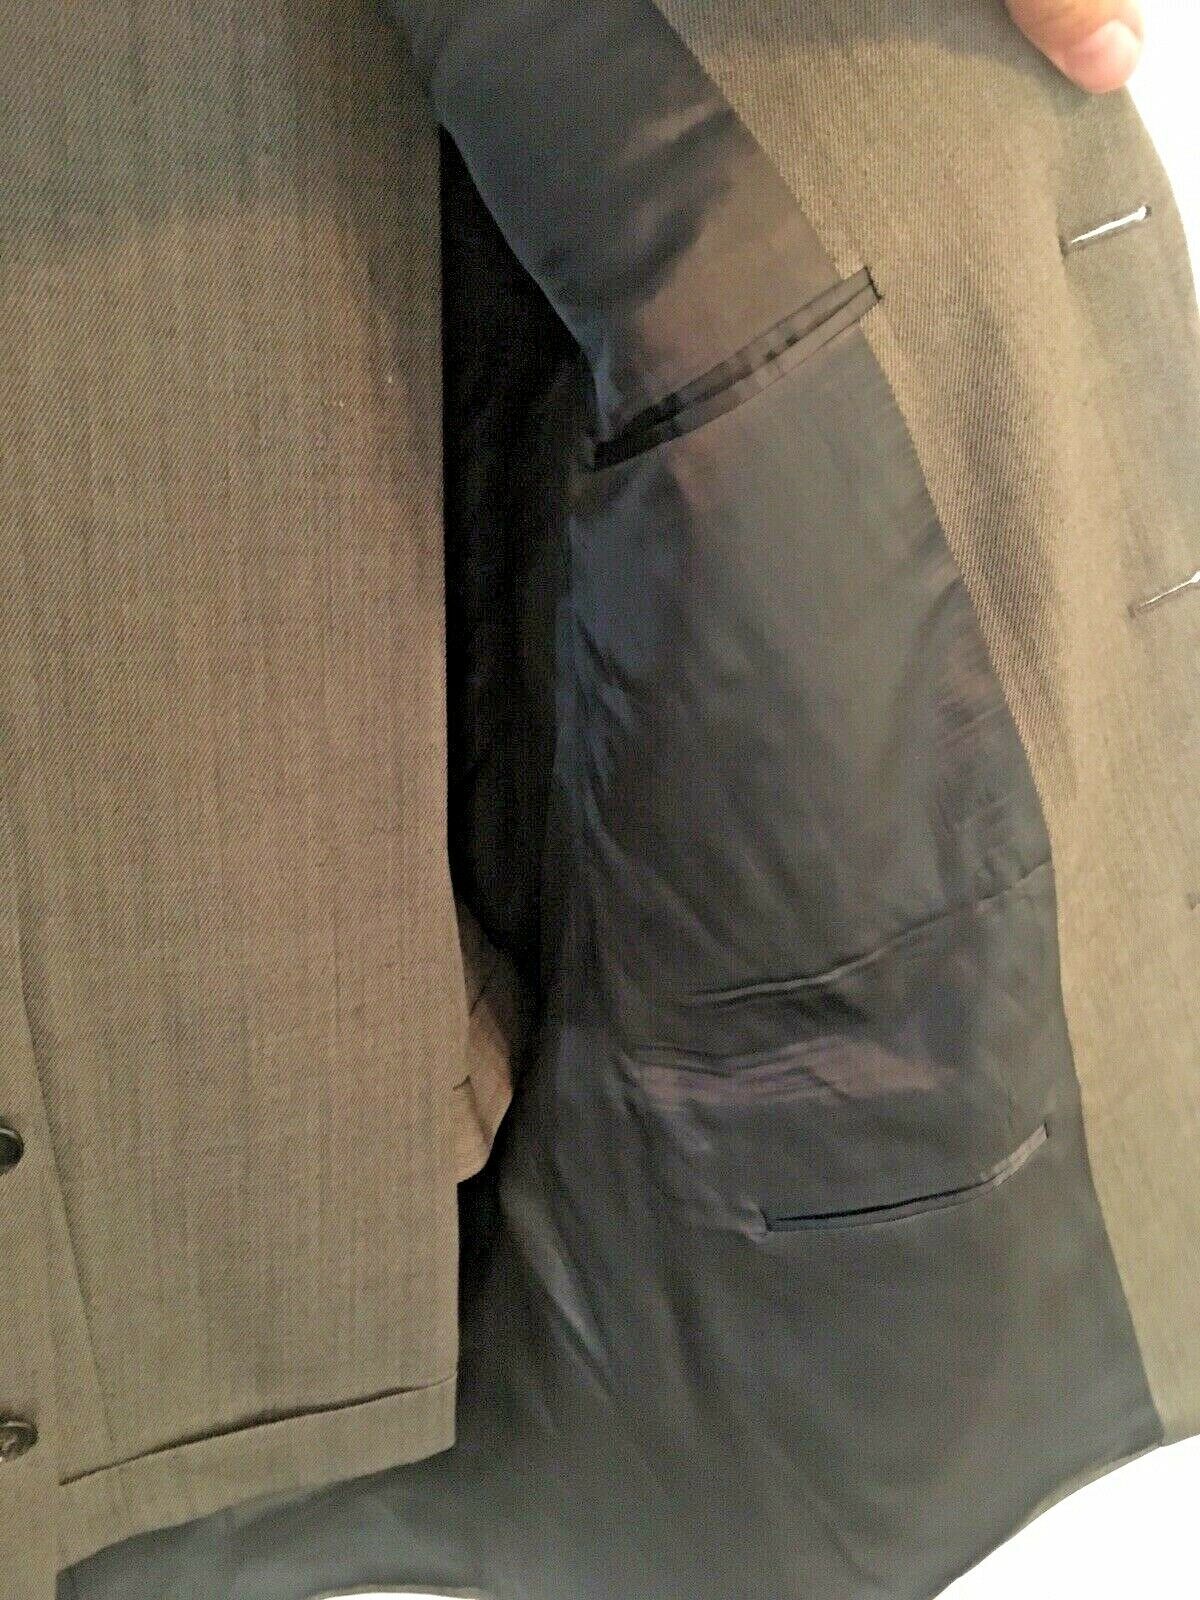 JOSEPH ABBOUD SUIT Mens Brown 3 Button Wool Pants 38 x 28 Inseam Coat ...